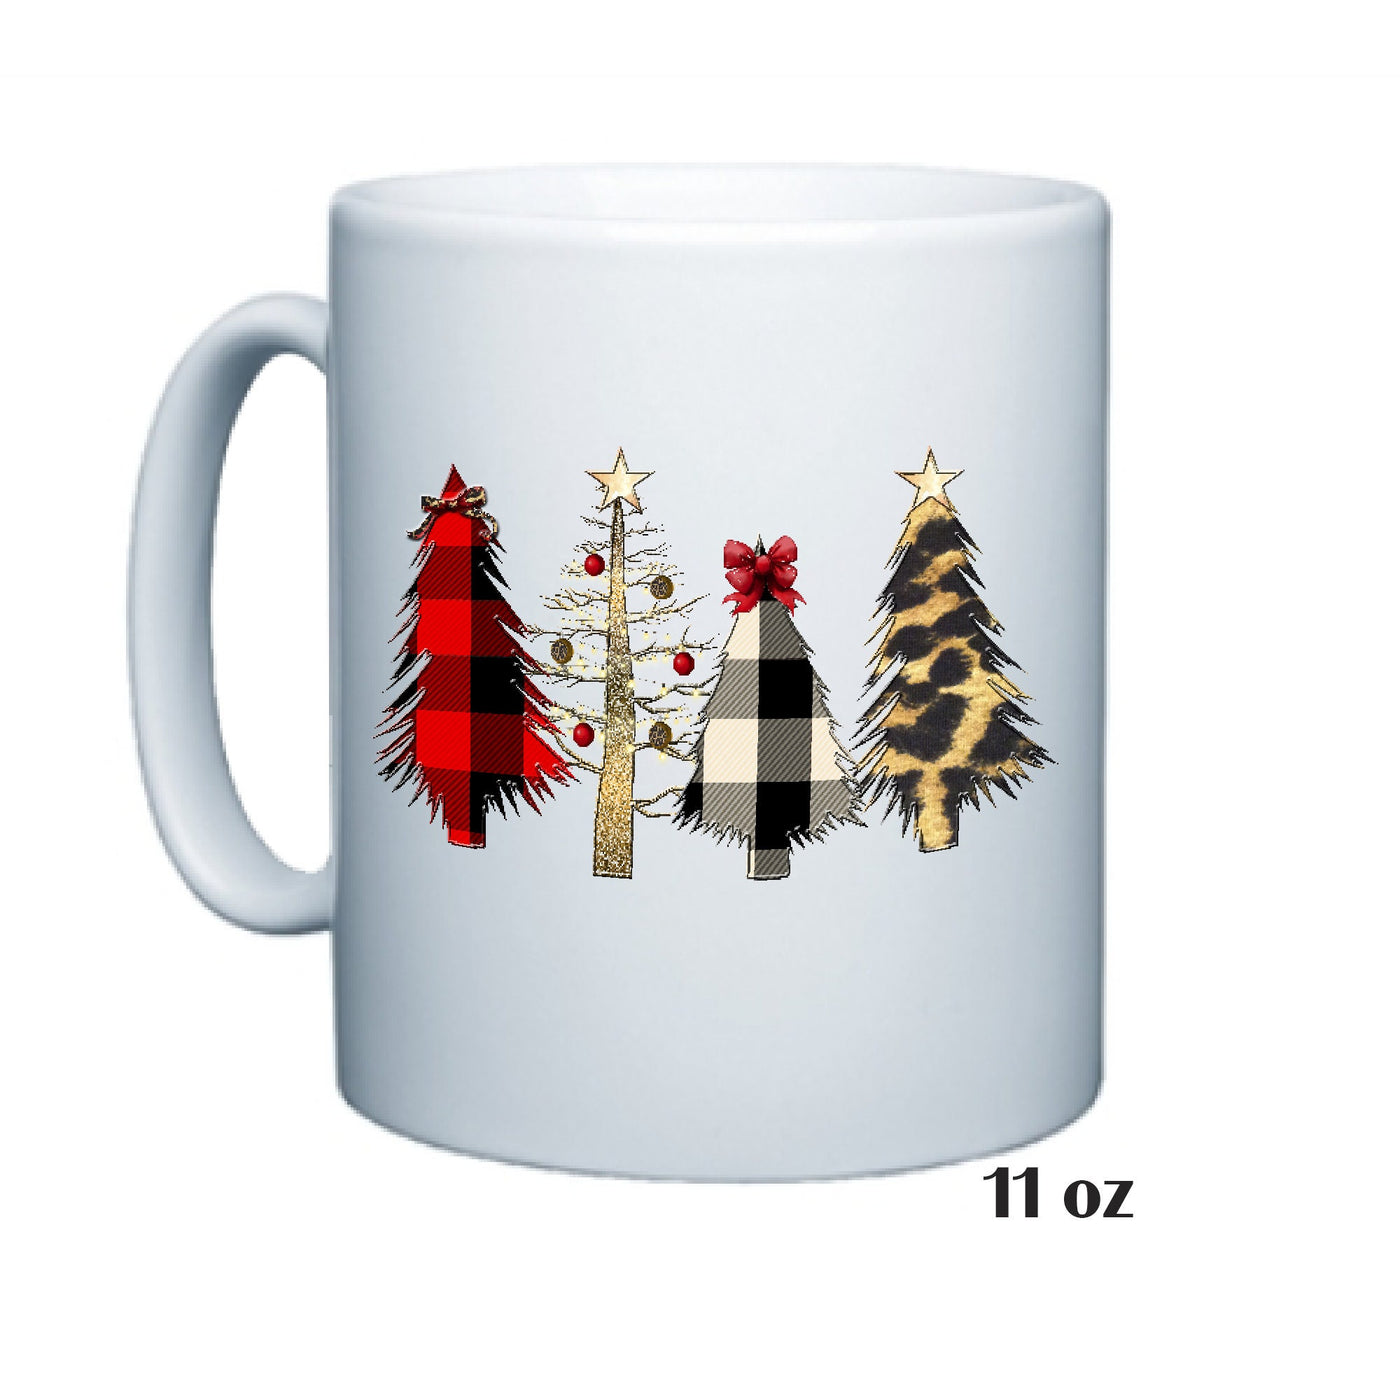 Christmas Trees Coffee Mug, Holiday Gift, Great Christmas Personalized Gift, Gift For Her, Gift For Him, Hot Chocolate Mug